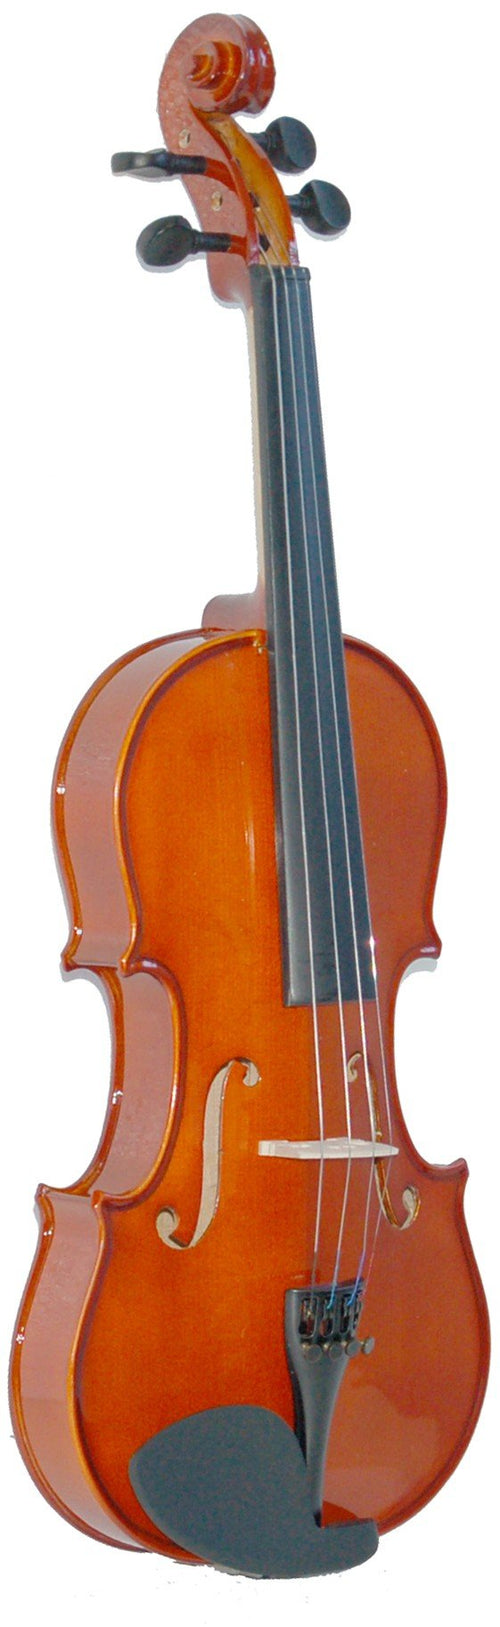 MADERA MV2040 Full Size 4/4 Violin Madera Violin for sale canada